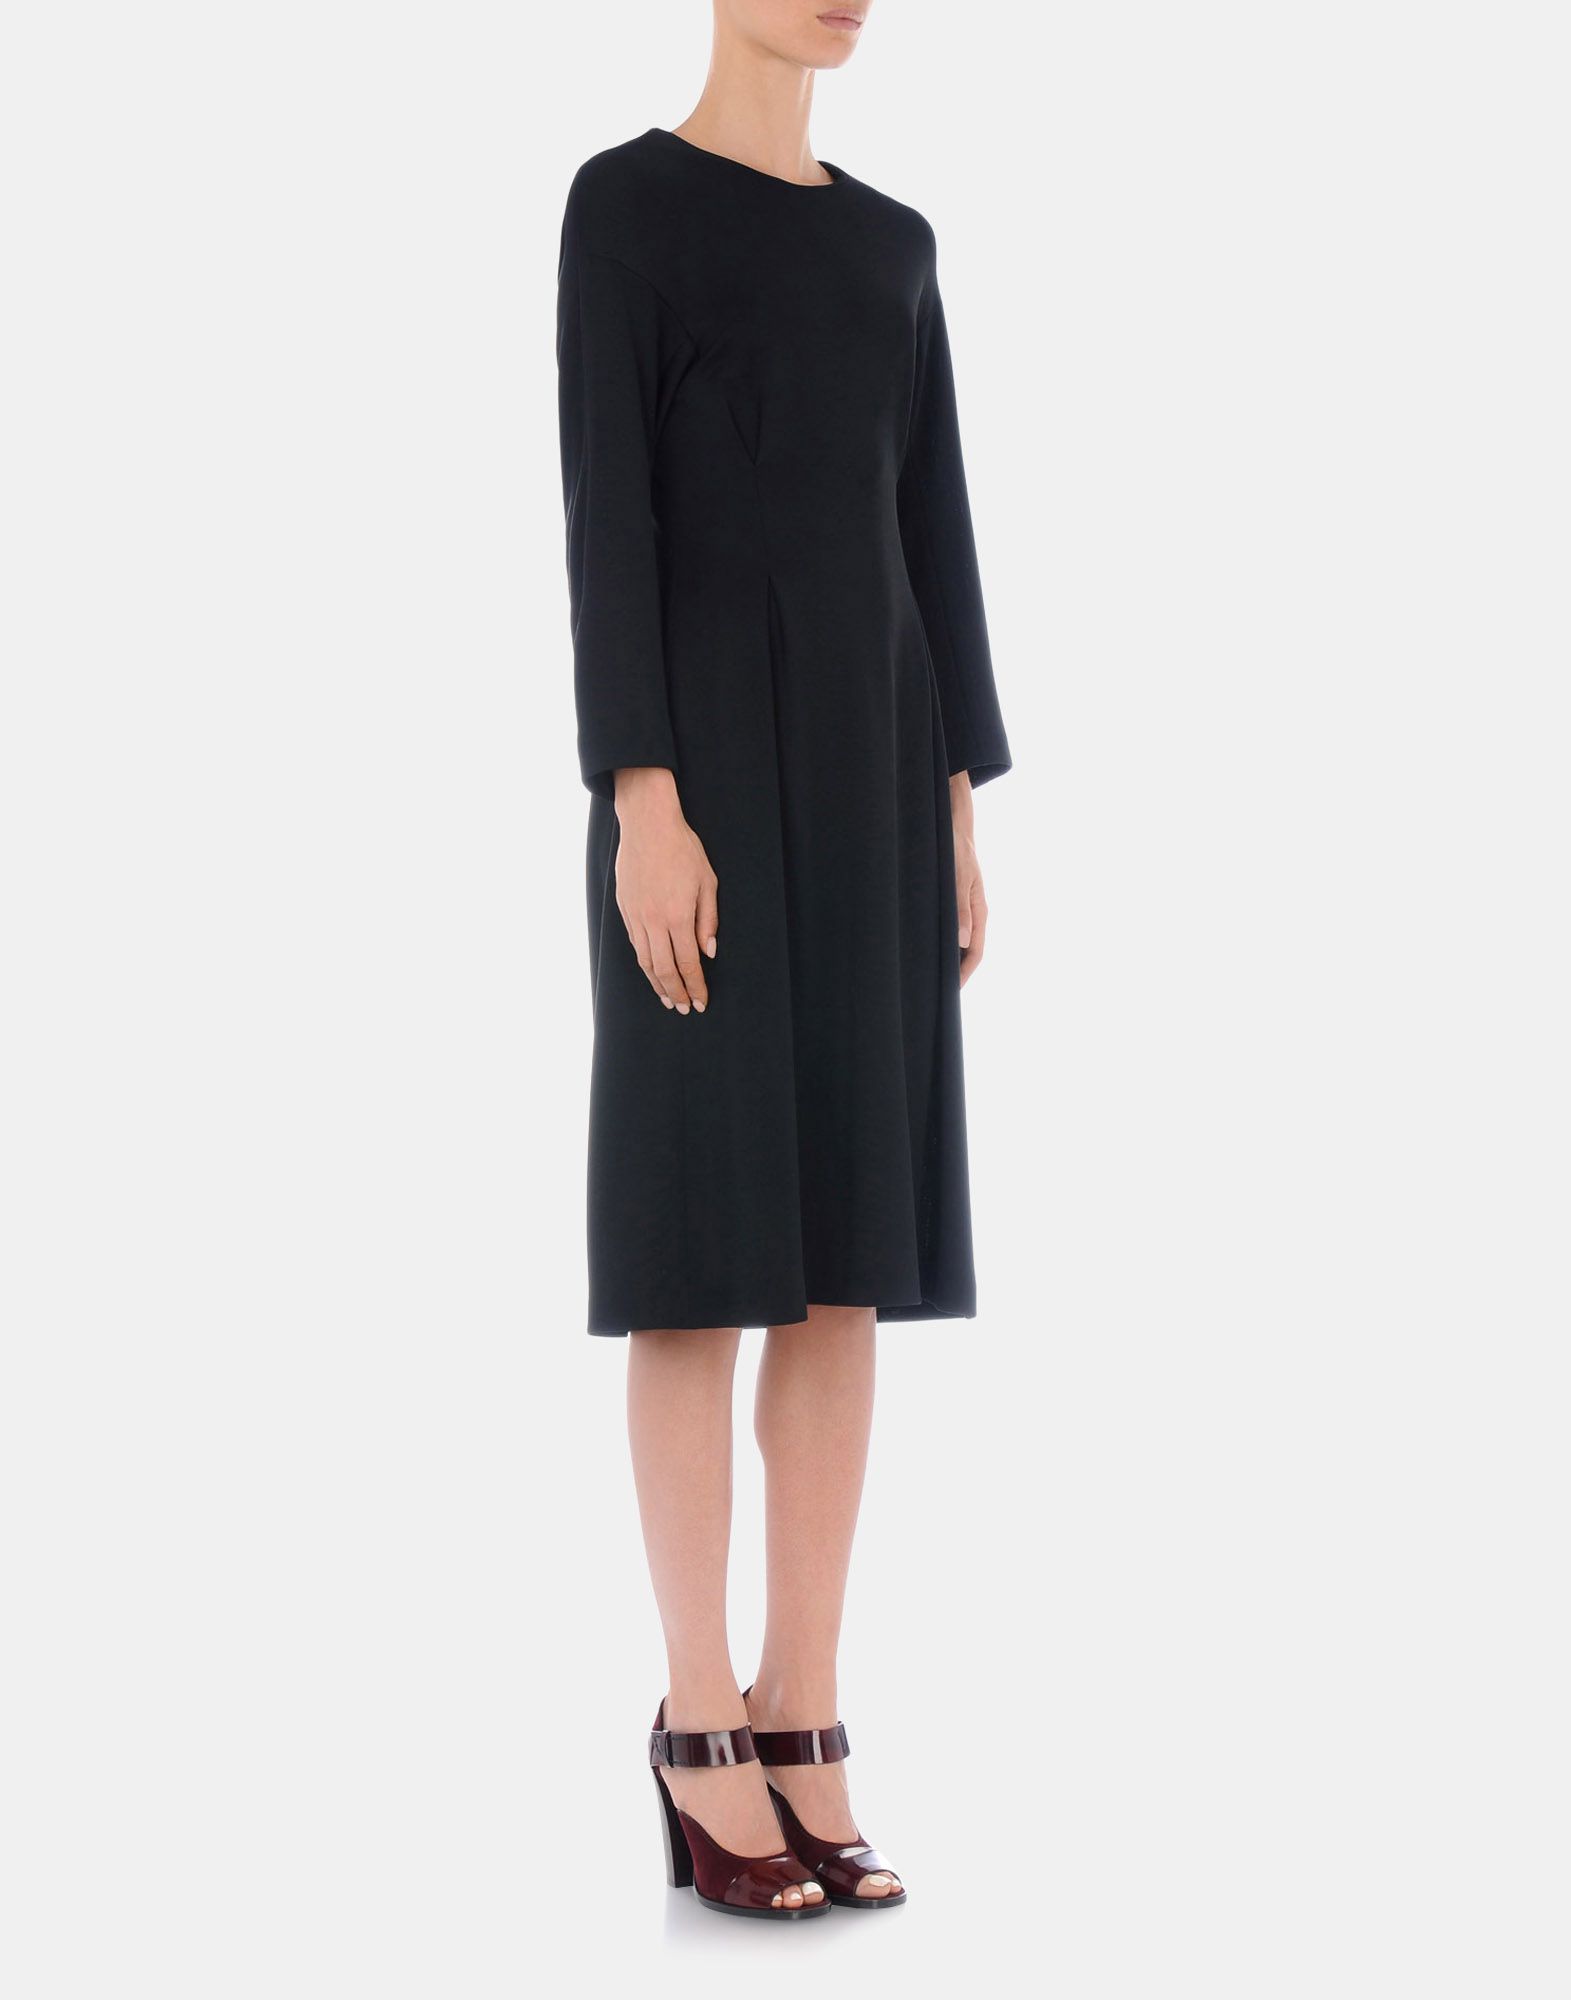 Dress Women - Dresses Women on Jil Sander Online Store